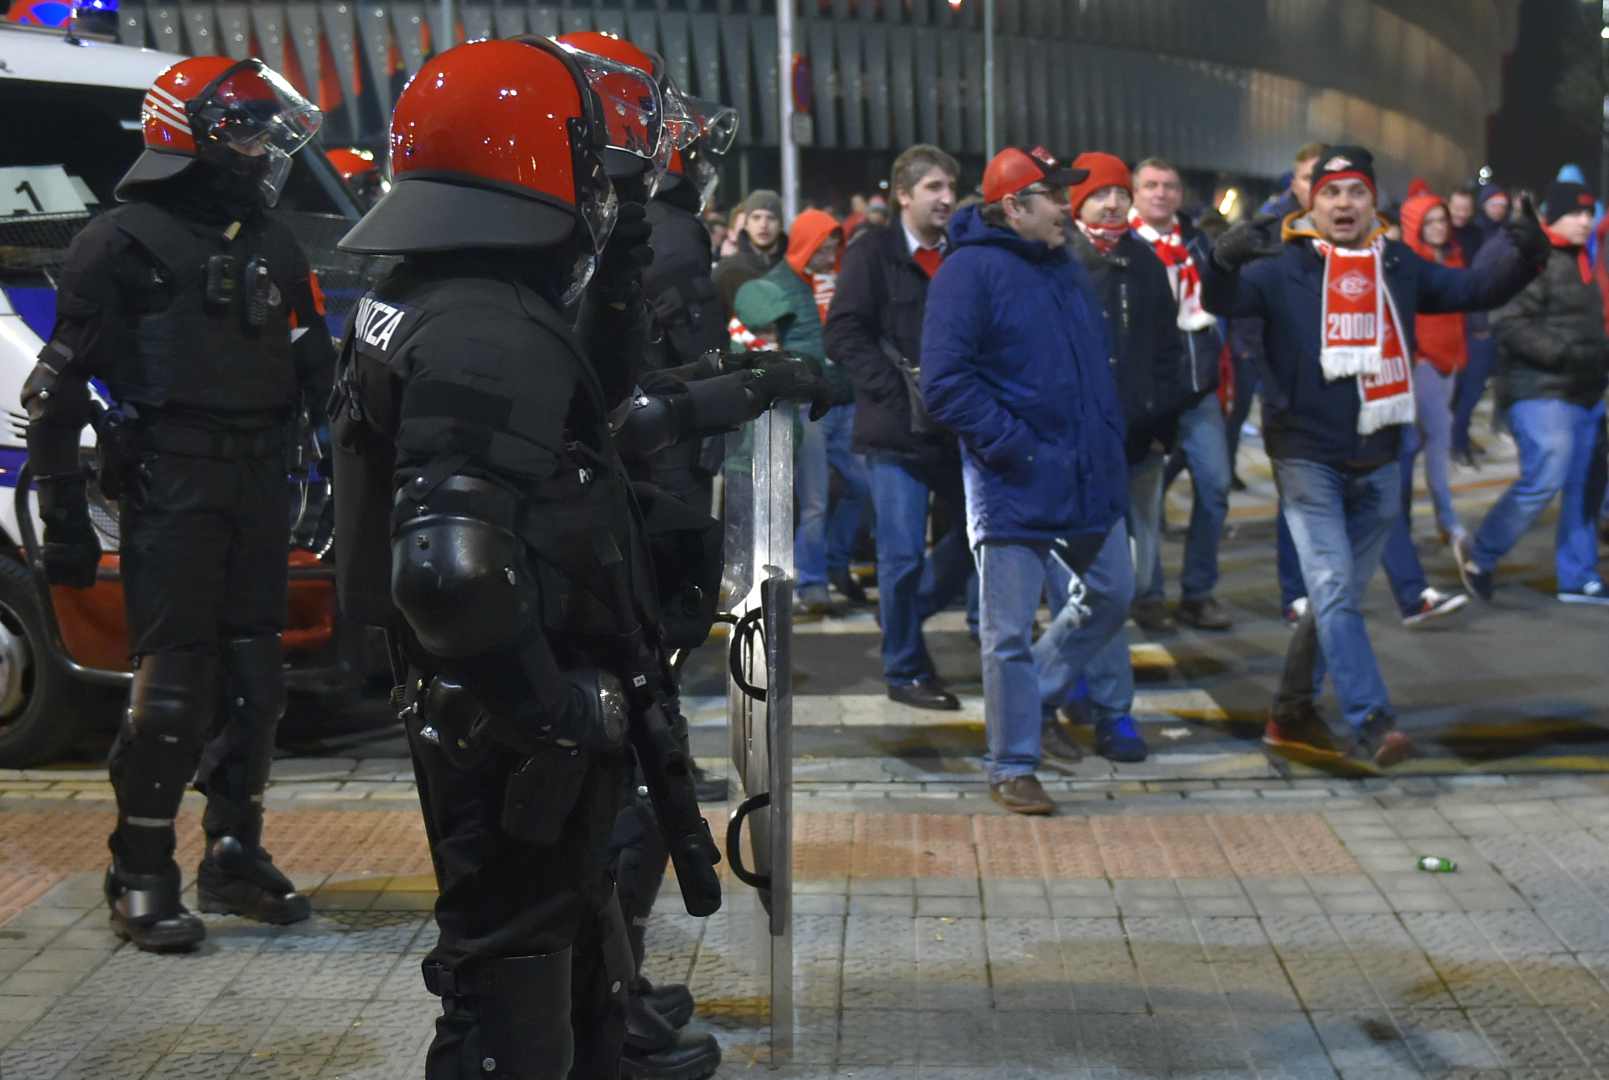 Quedan en libertad con cargos los 9 detenidos en los incidentes con hinchas rusos en Bilbao